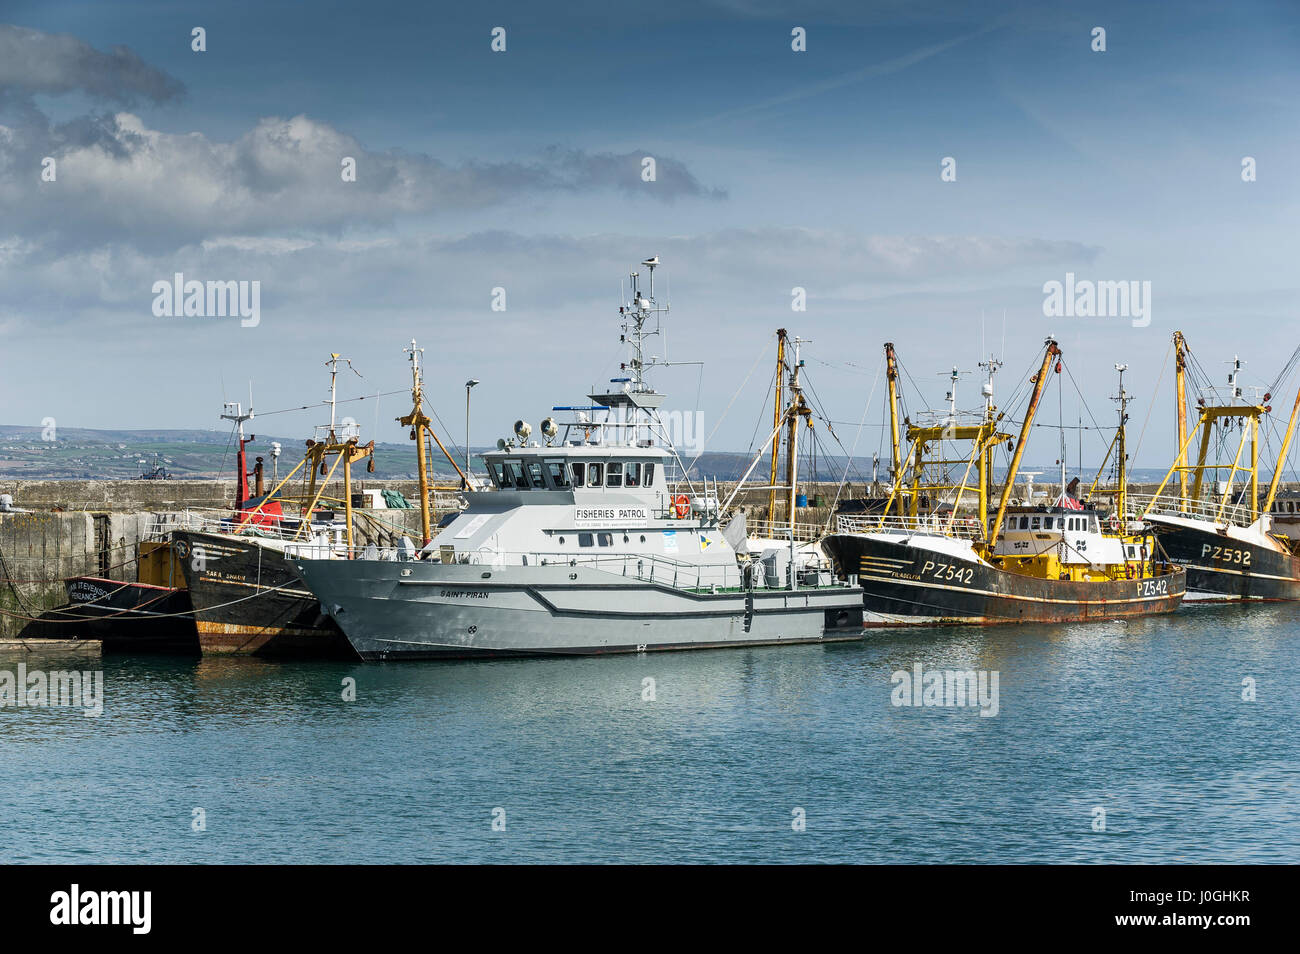 Newlyn Fishing Port Saint Piran Fischerei Patrouille Schiff Hafen Hafen Angeln Boot Schiff Angeln Fischerboote Fischereifahrzeuge Stockfoto